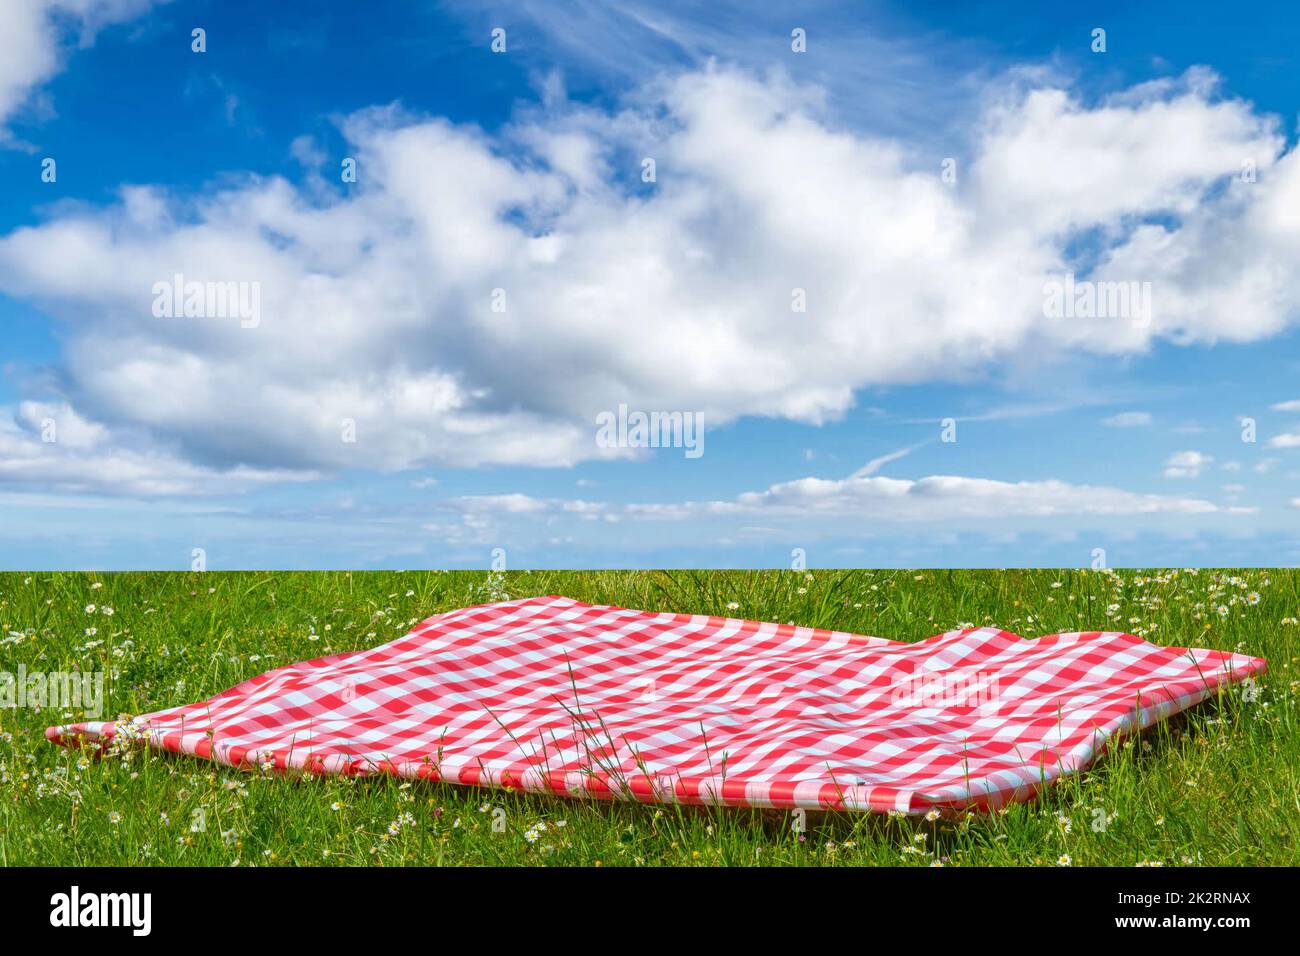 Rotes Picknicktuch. Rote karierte Picknickdecke auf einer Wiese mit blühenden Gänseblümchen und bewölktem Himmel. Schöner Hintergrund für die Produktplatzierung oder -Montage. Stockfoto